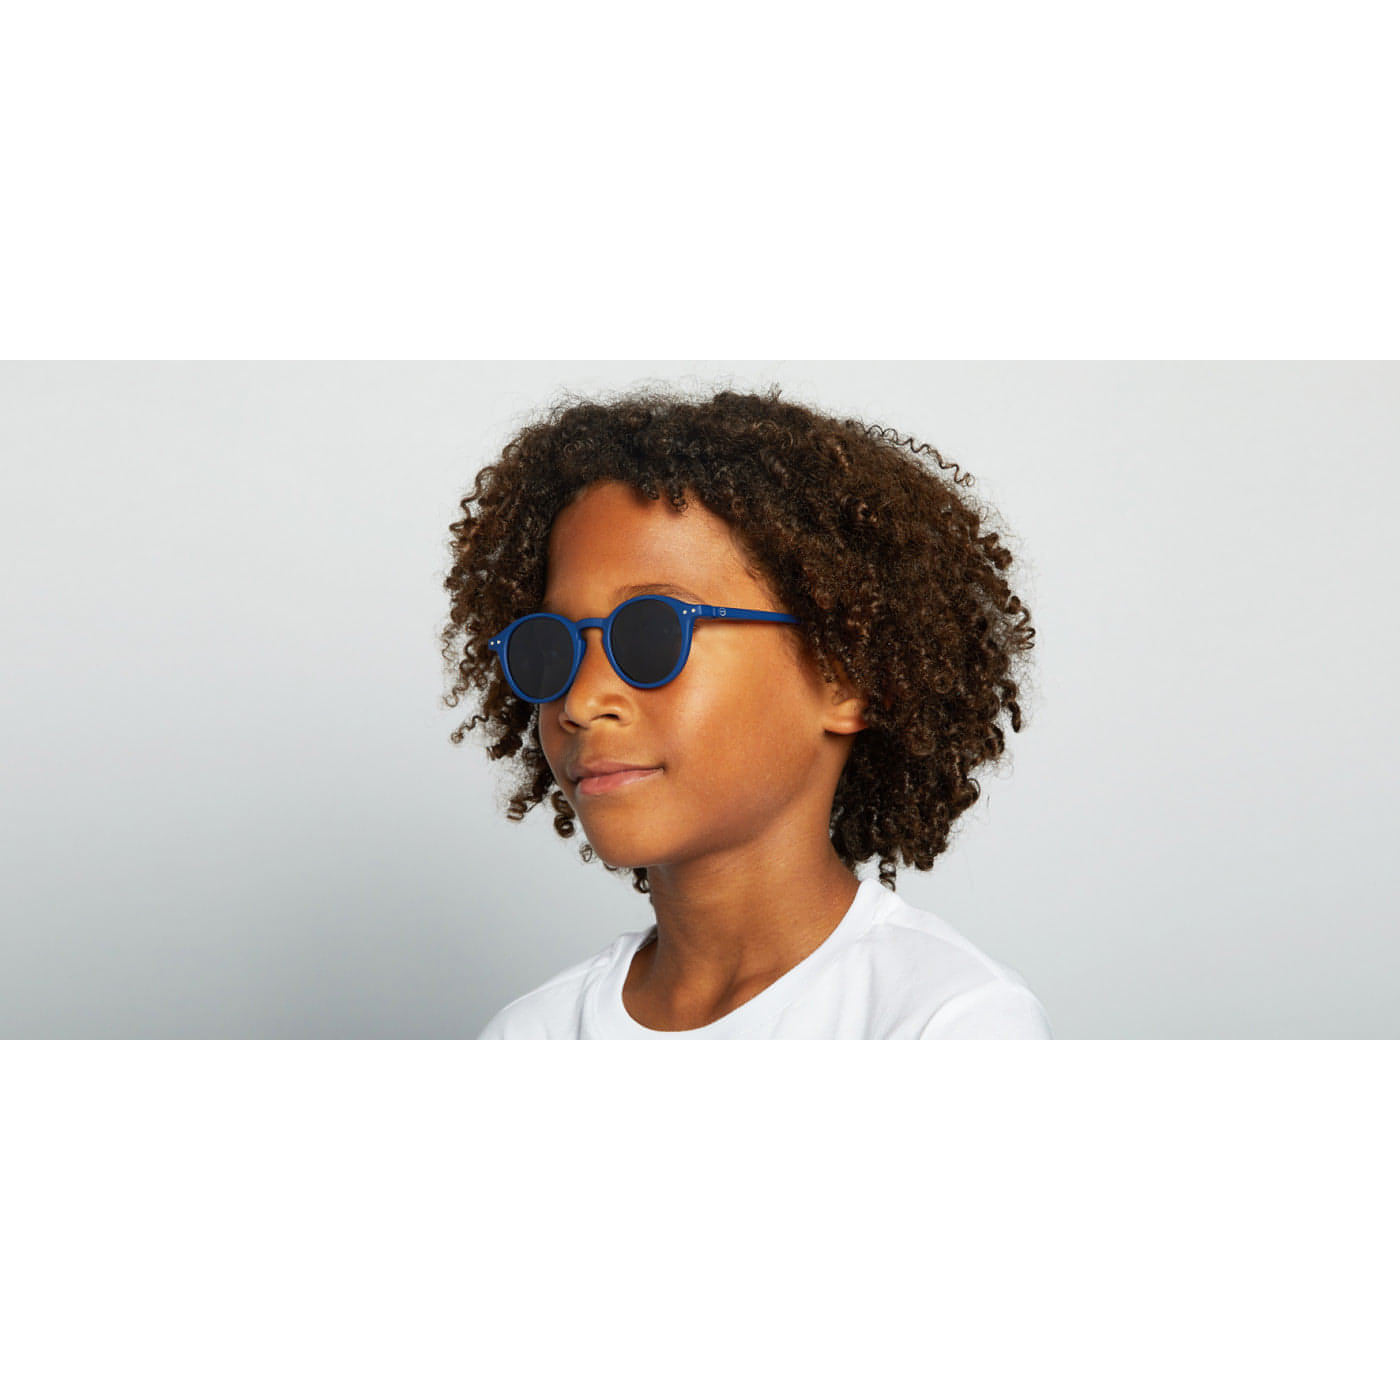 Óculos de Sol Navy Blue #D para crianças dos 5 aos 10 anos